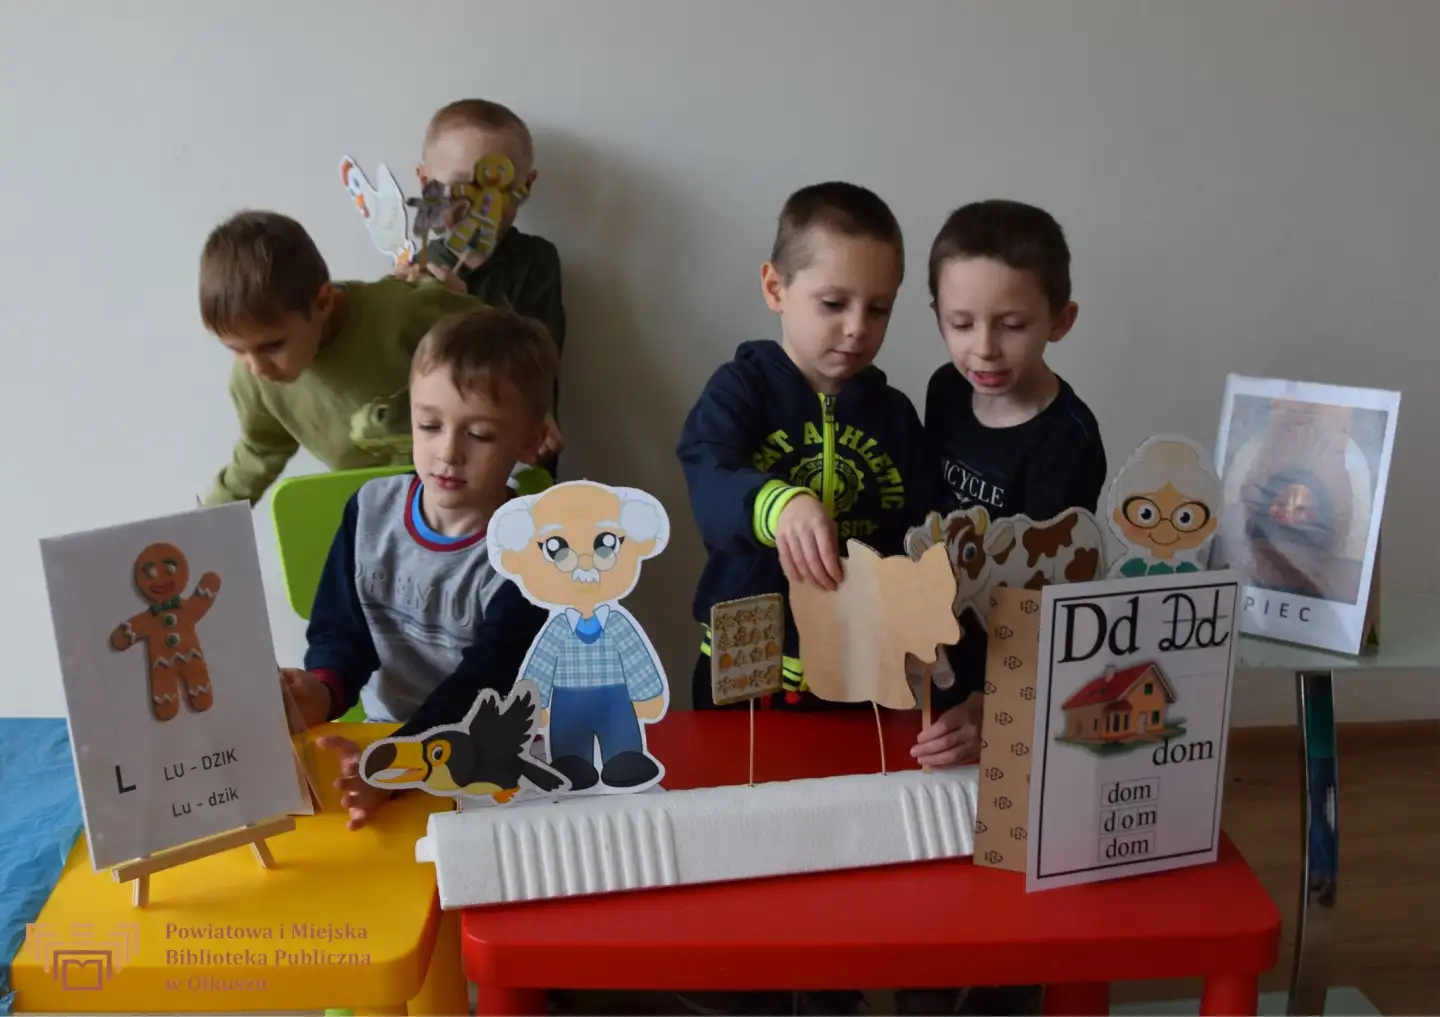 Zdjęcie zostało zrobione w trakcie Kreatywnych zabaw z książką. Grupa chłopców stoi przy stoliczkach, na którym znajdują się różne obrazki, literki i wyrazy.